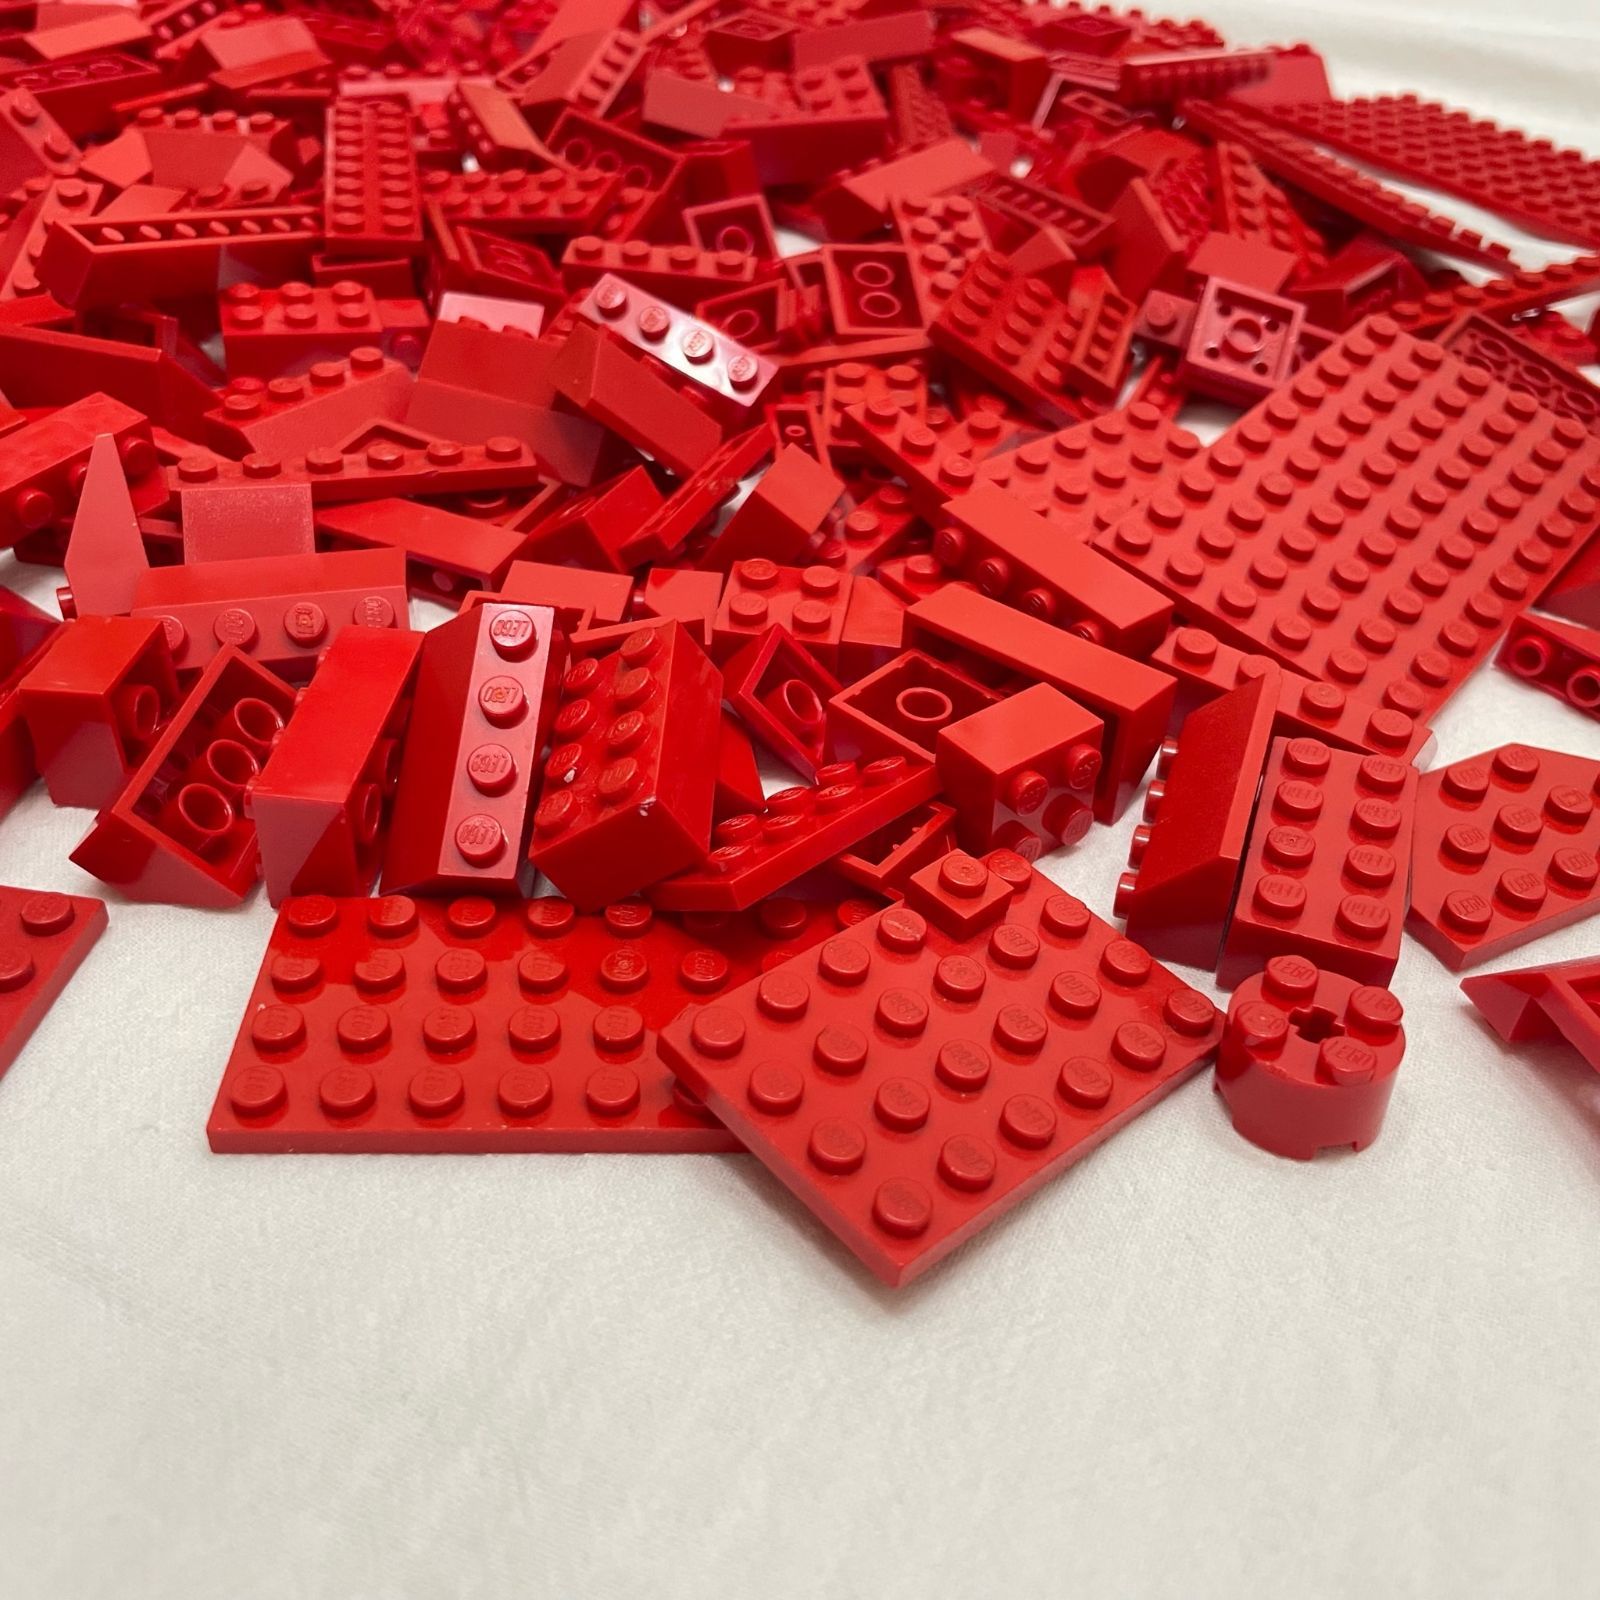 LEGO レゴ 赤 レッド系 中古 パーツ ブロック プレート スロープ